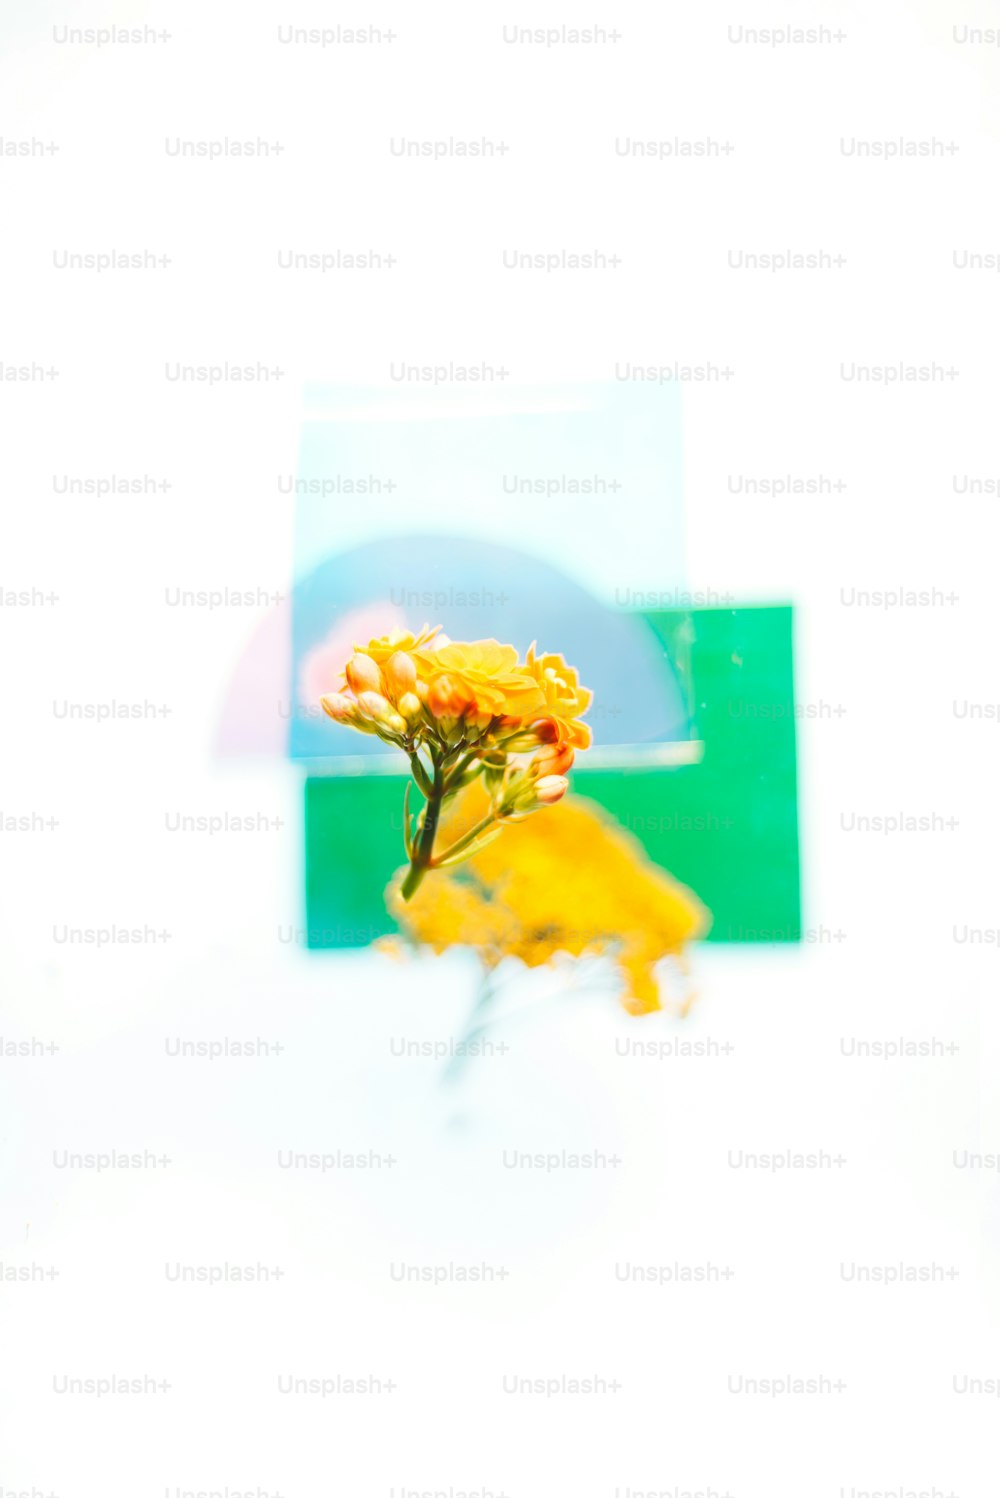 un'immagine di un fiore giallo davanti a uno sfondo bianco